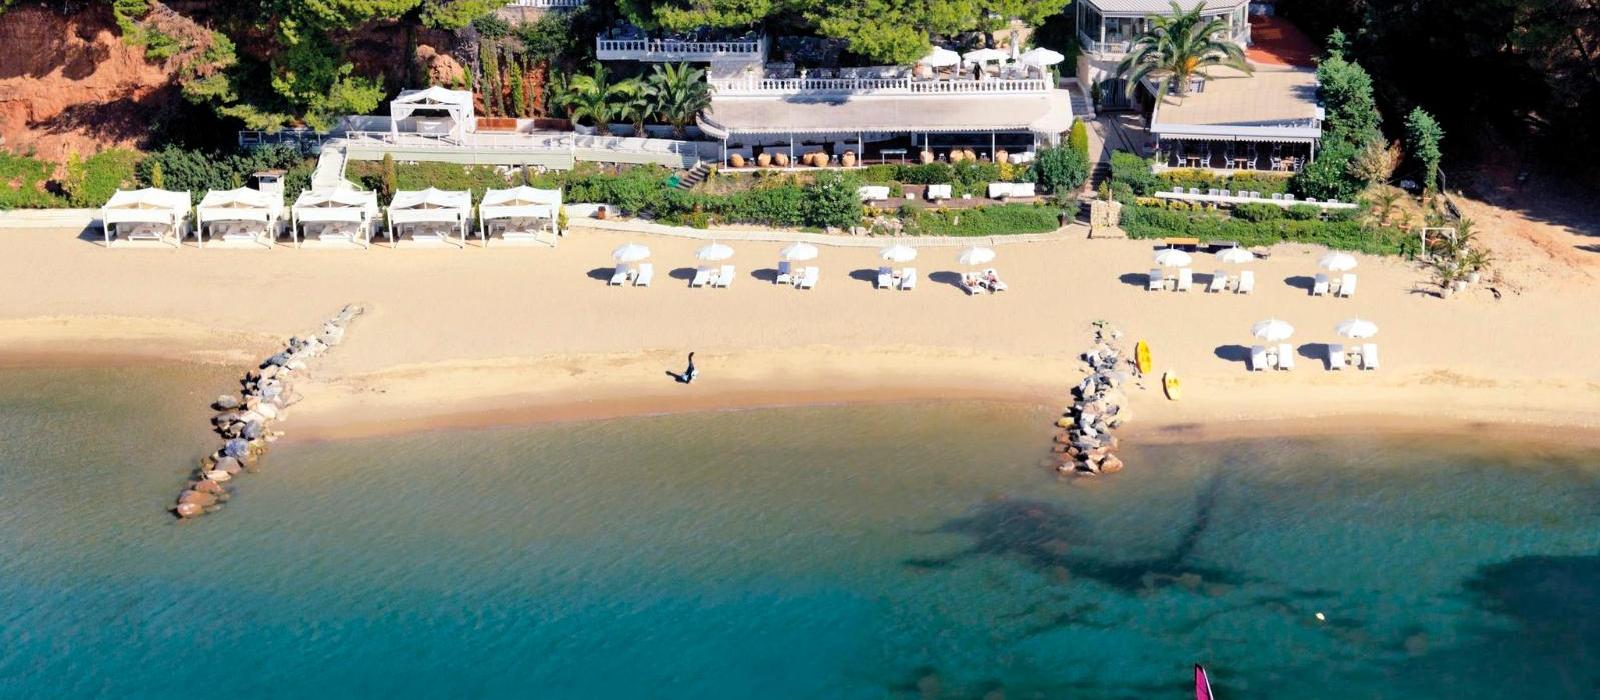 达纳伊别墅度假酒店(Danai Beach Resort & Villas) 图片  www.lhw.cn